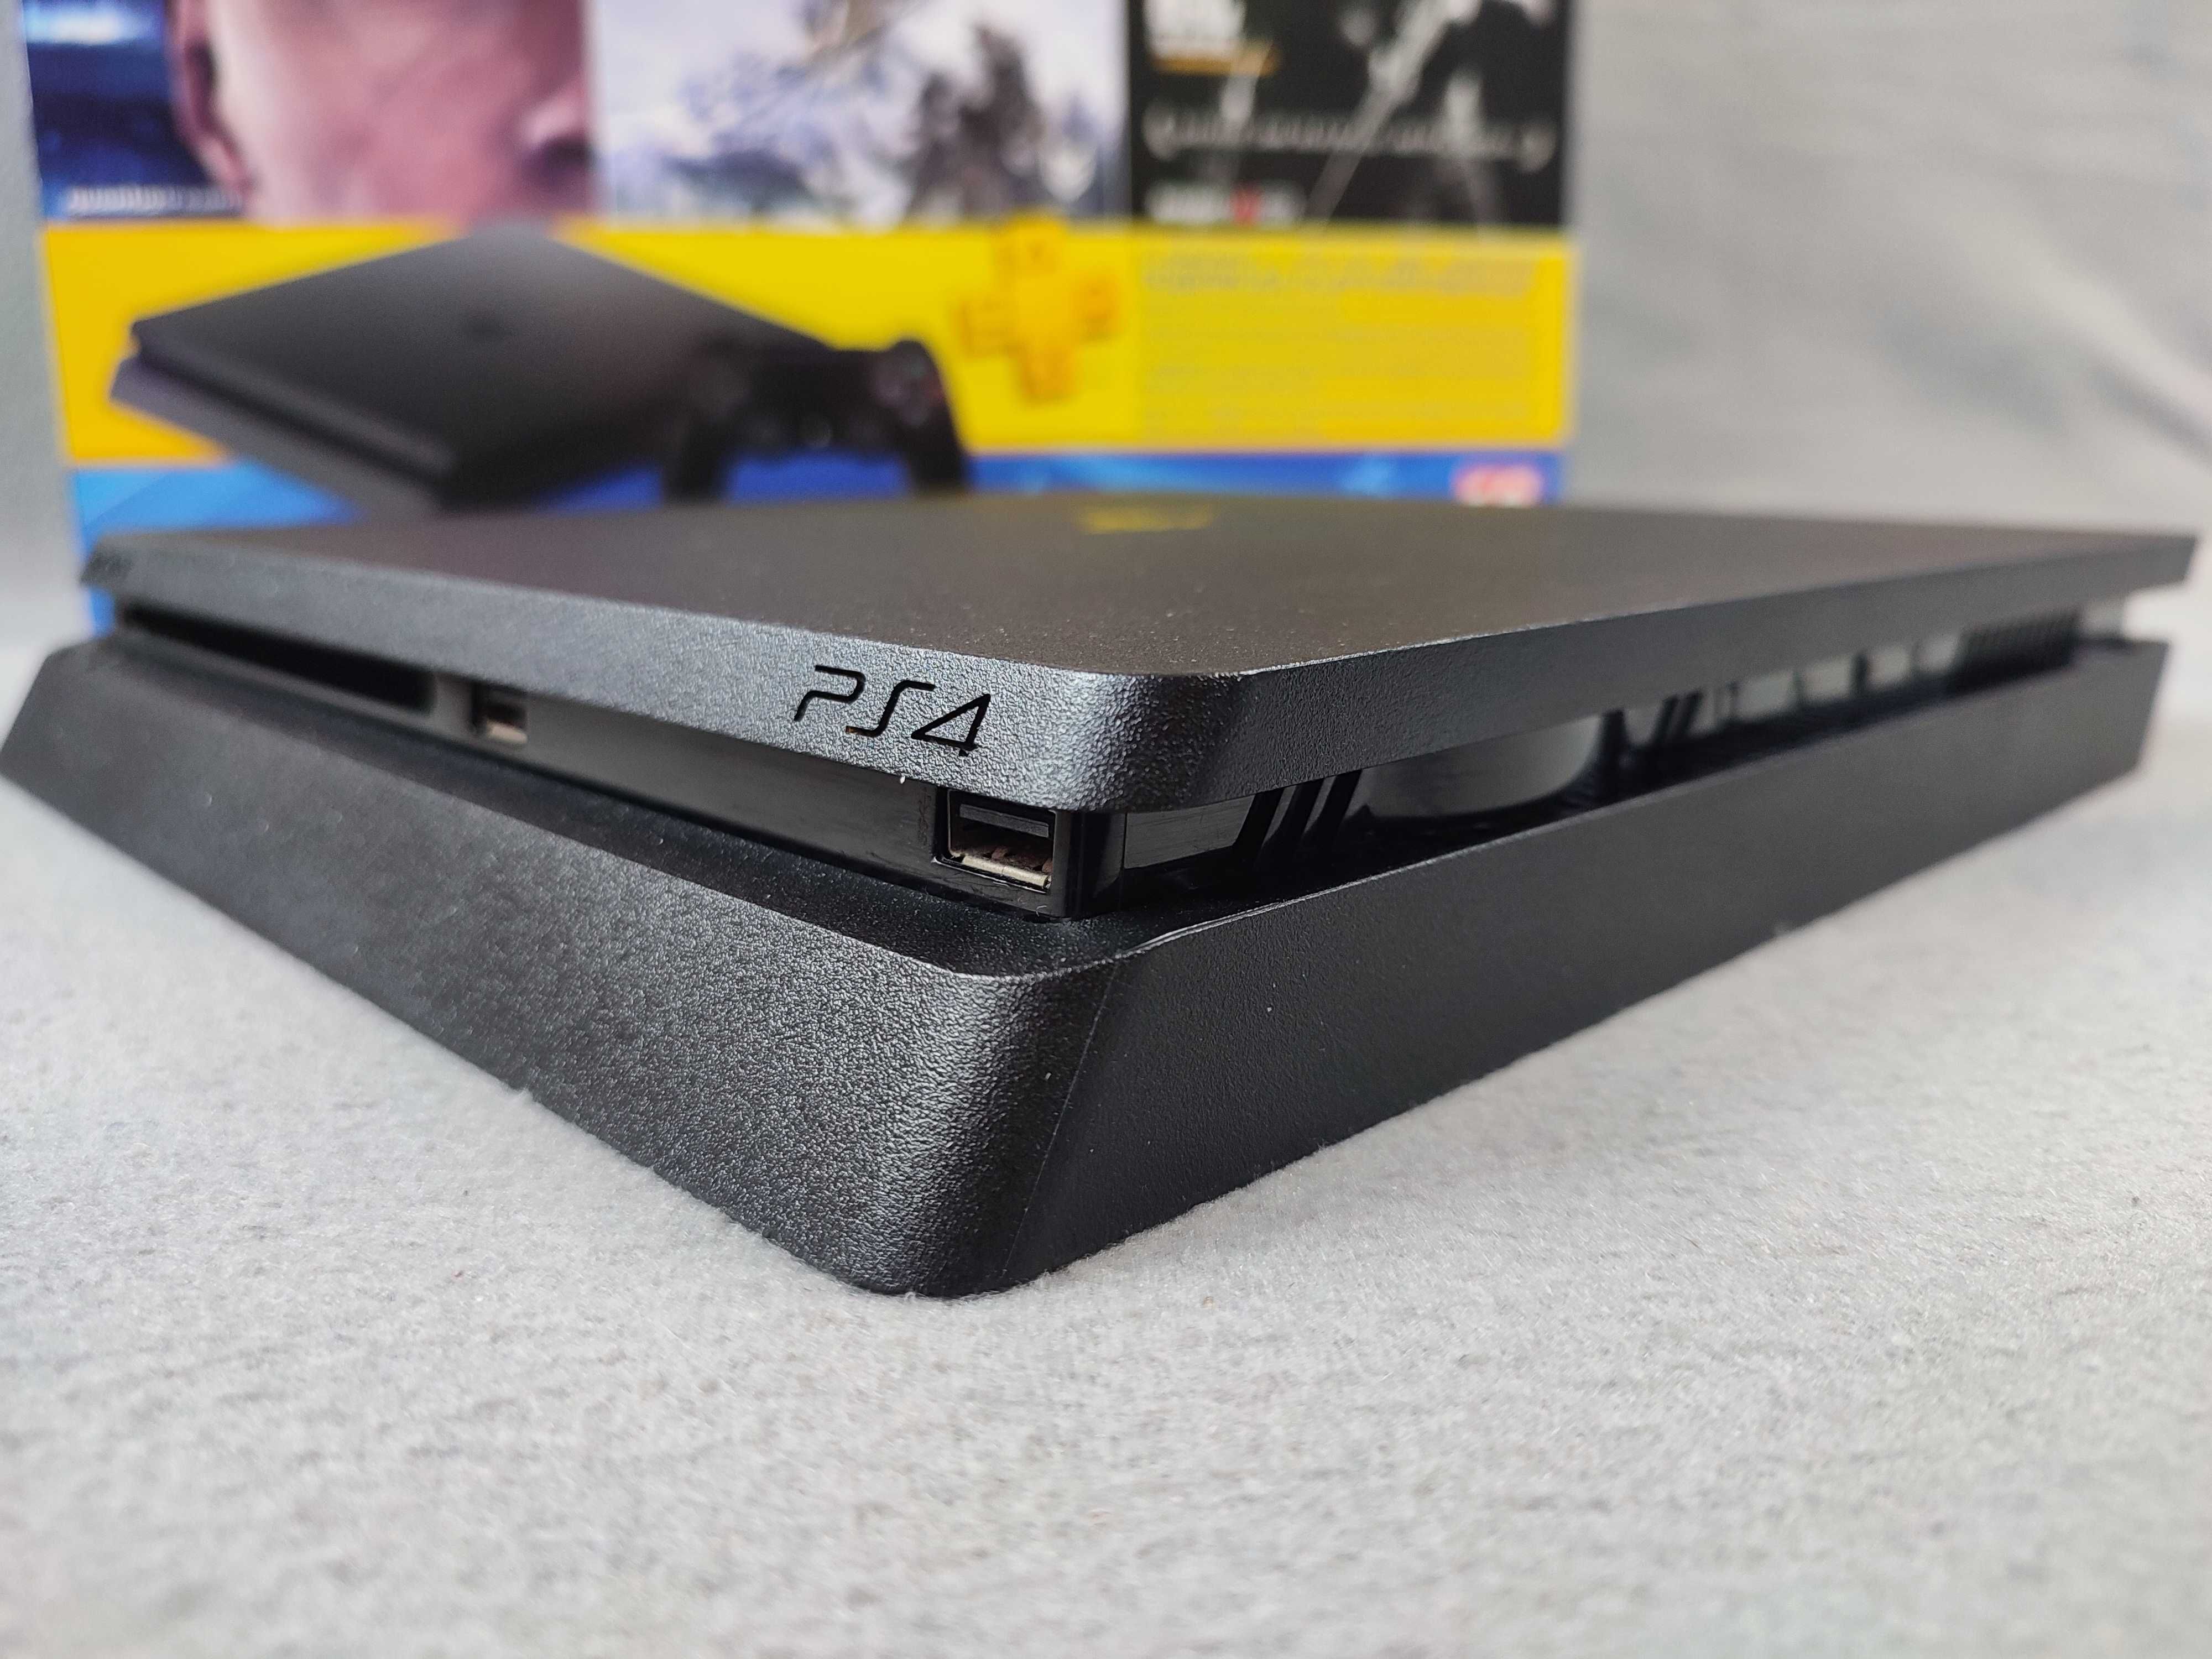 Игровая консоль Sony Playstation 4 Slim 1Tb (PS 4) + Доп Джойстик